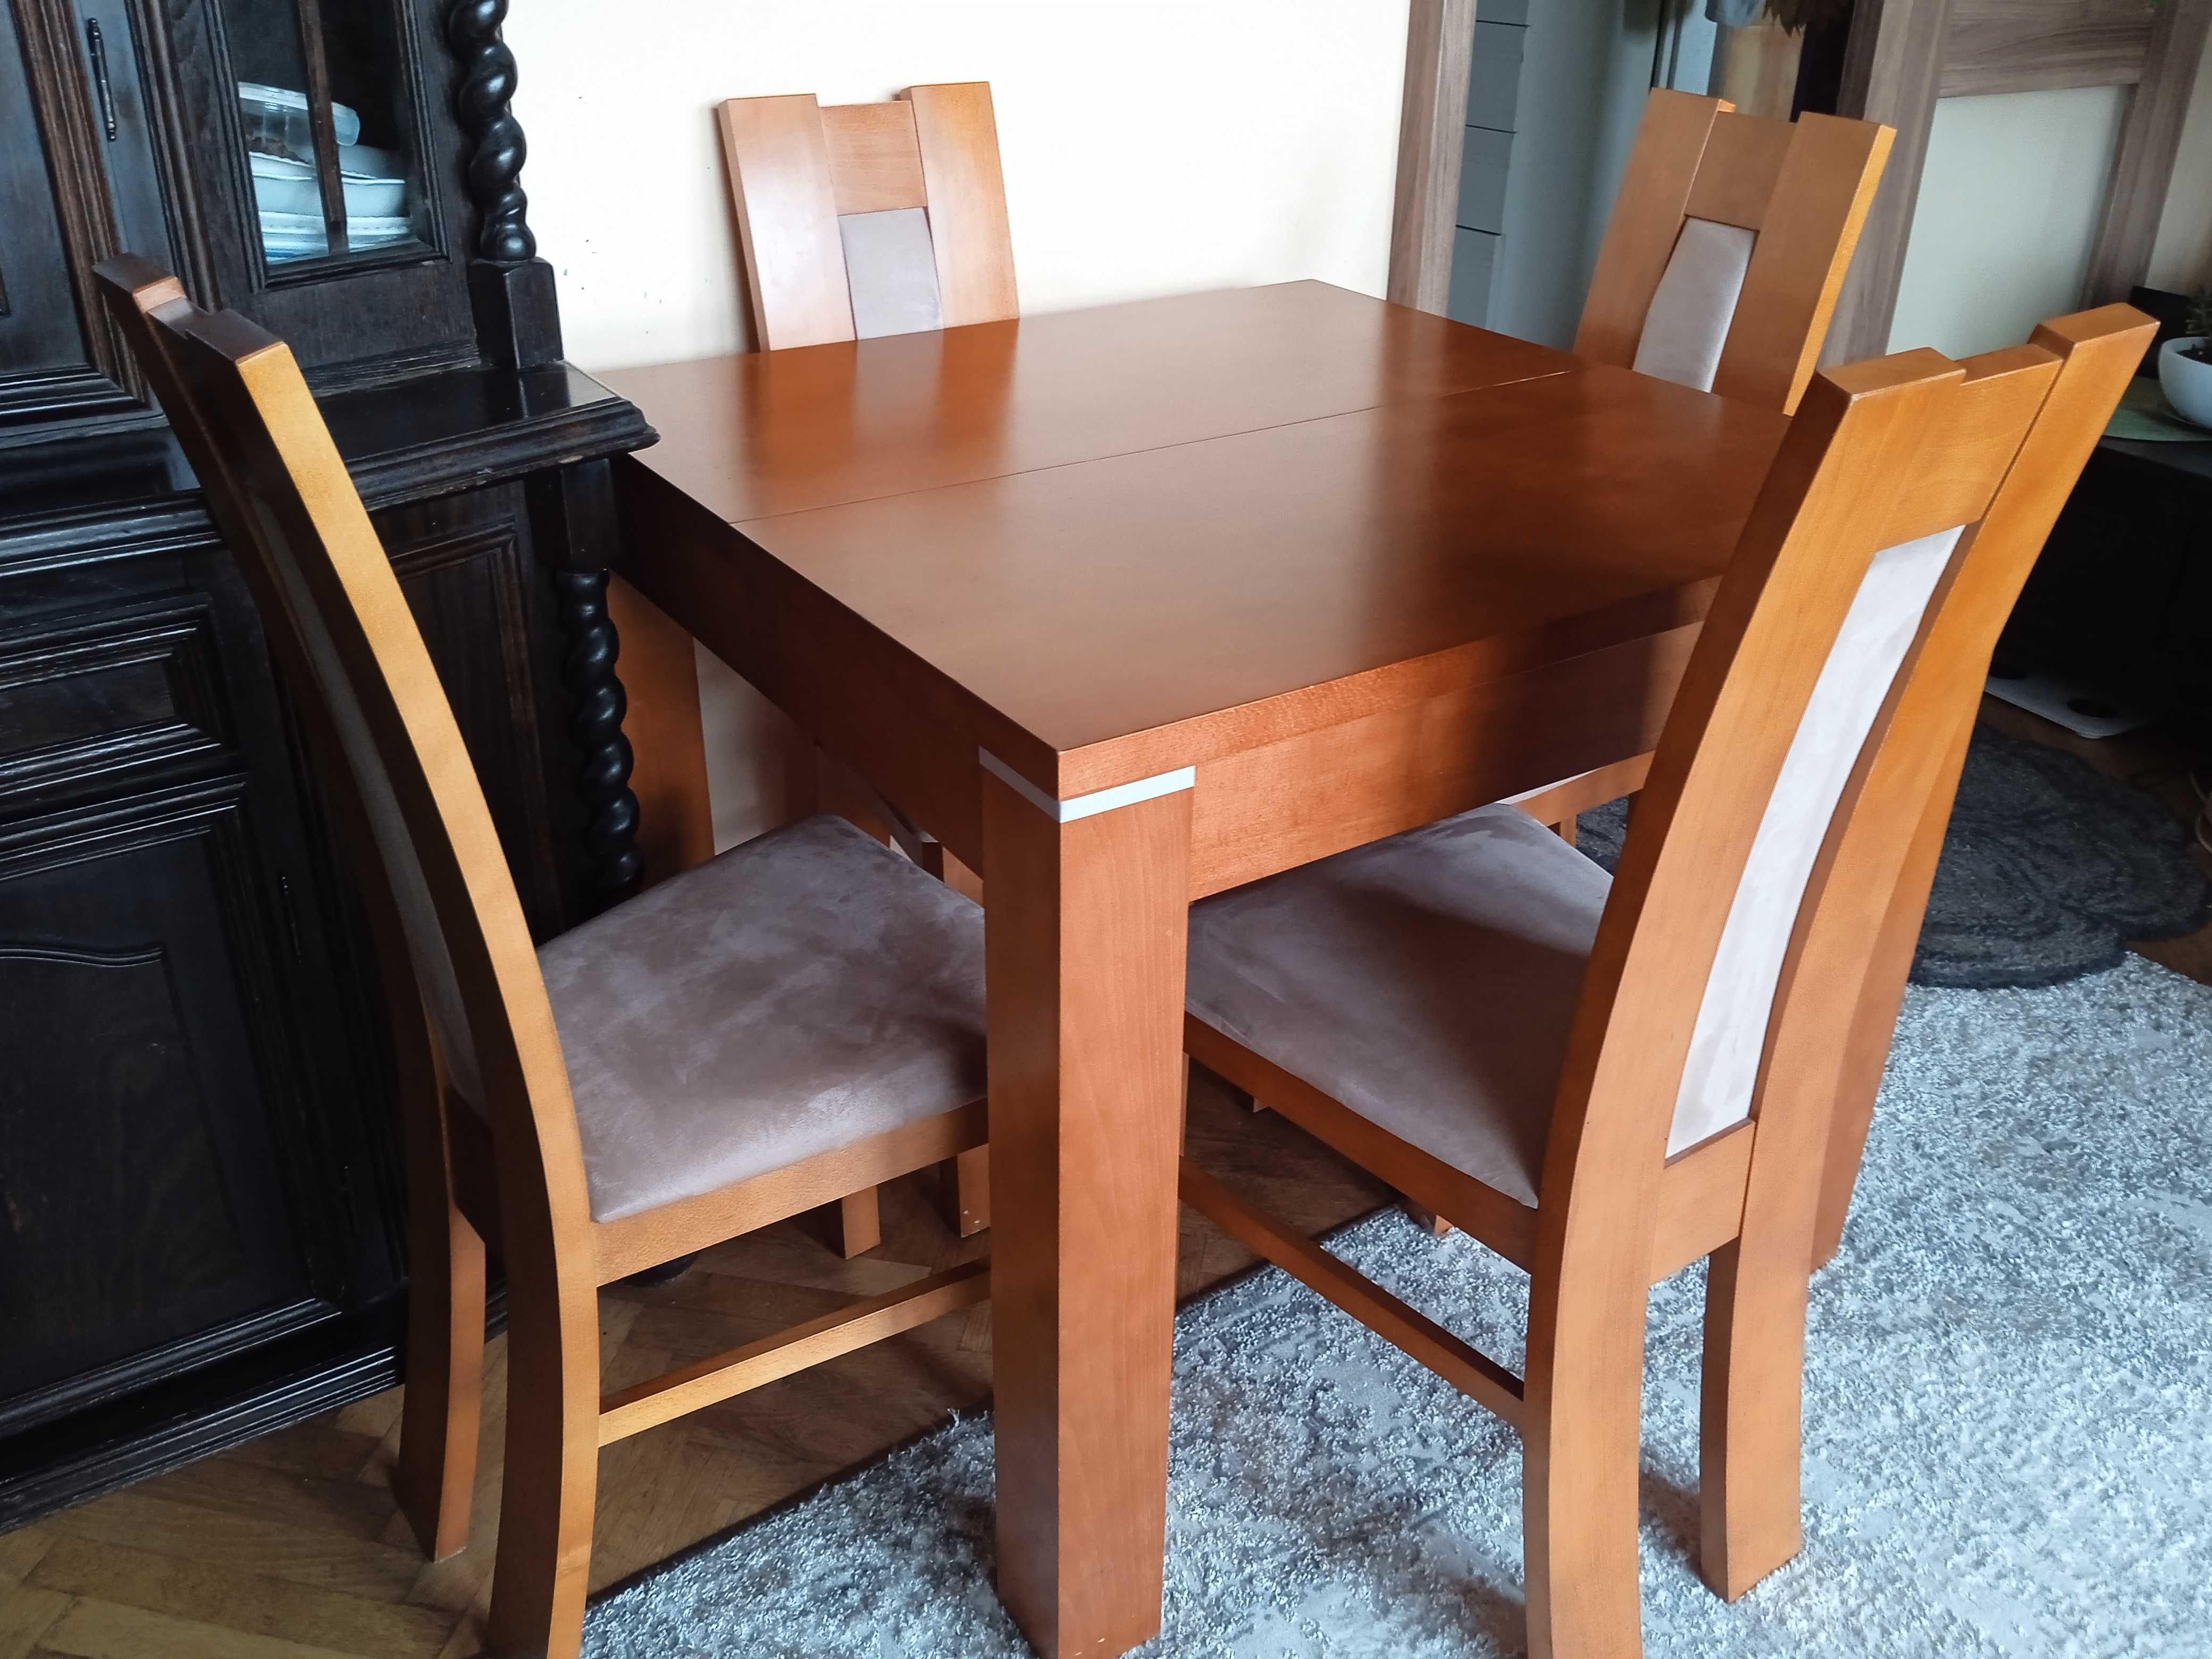 Stół rozsuwany drewniany + 4 krzesła